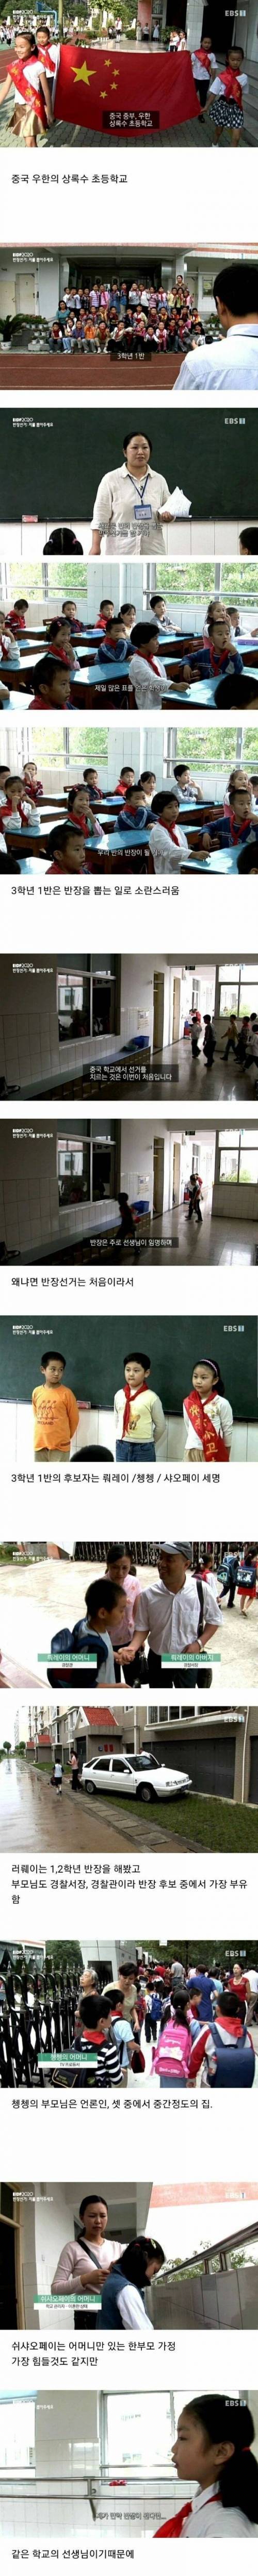 [스압] 중국 초등학교의 반장 선거.jpg